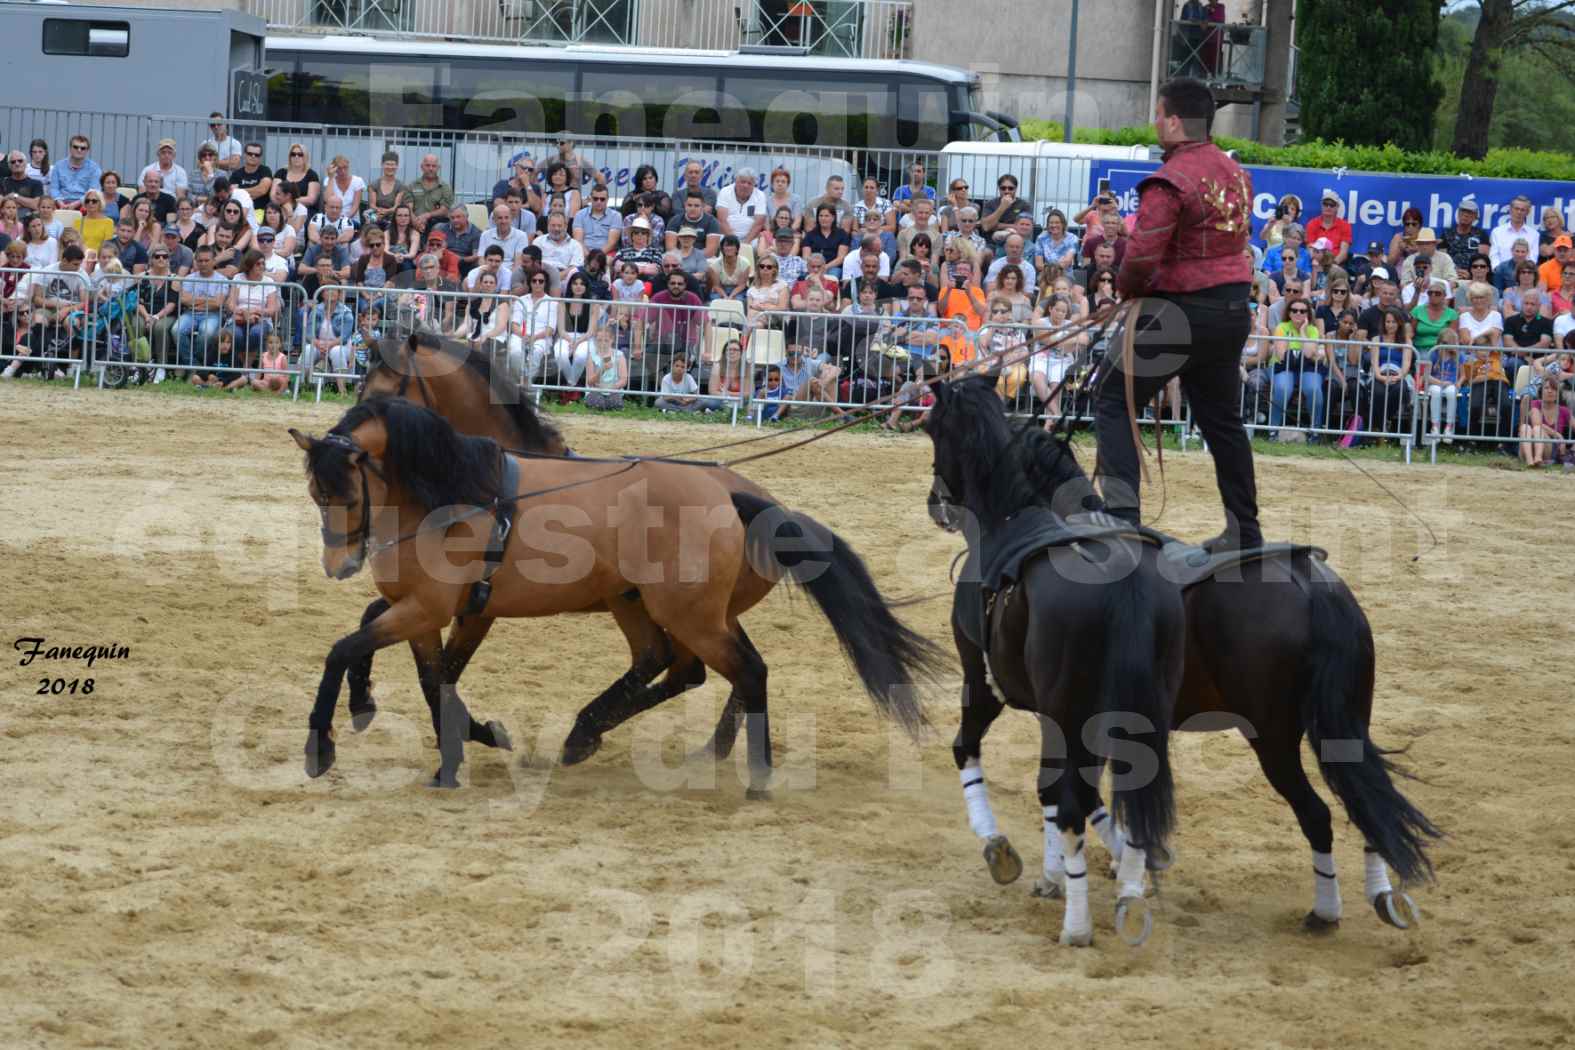 Spectacle Équestre le 3 juin 2018 à Saint Gély du Fesc - Poste Hongroise de 2 à 6 chevaux - Benoît SOUMILLE - 6